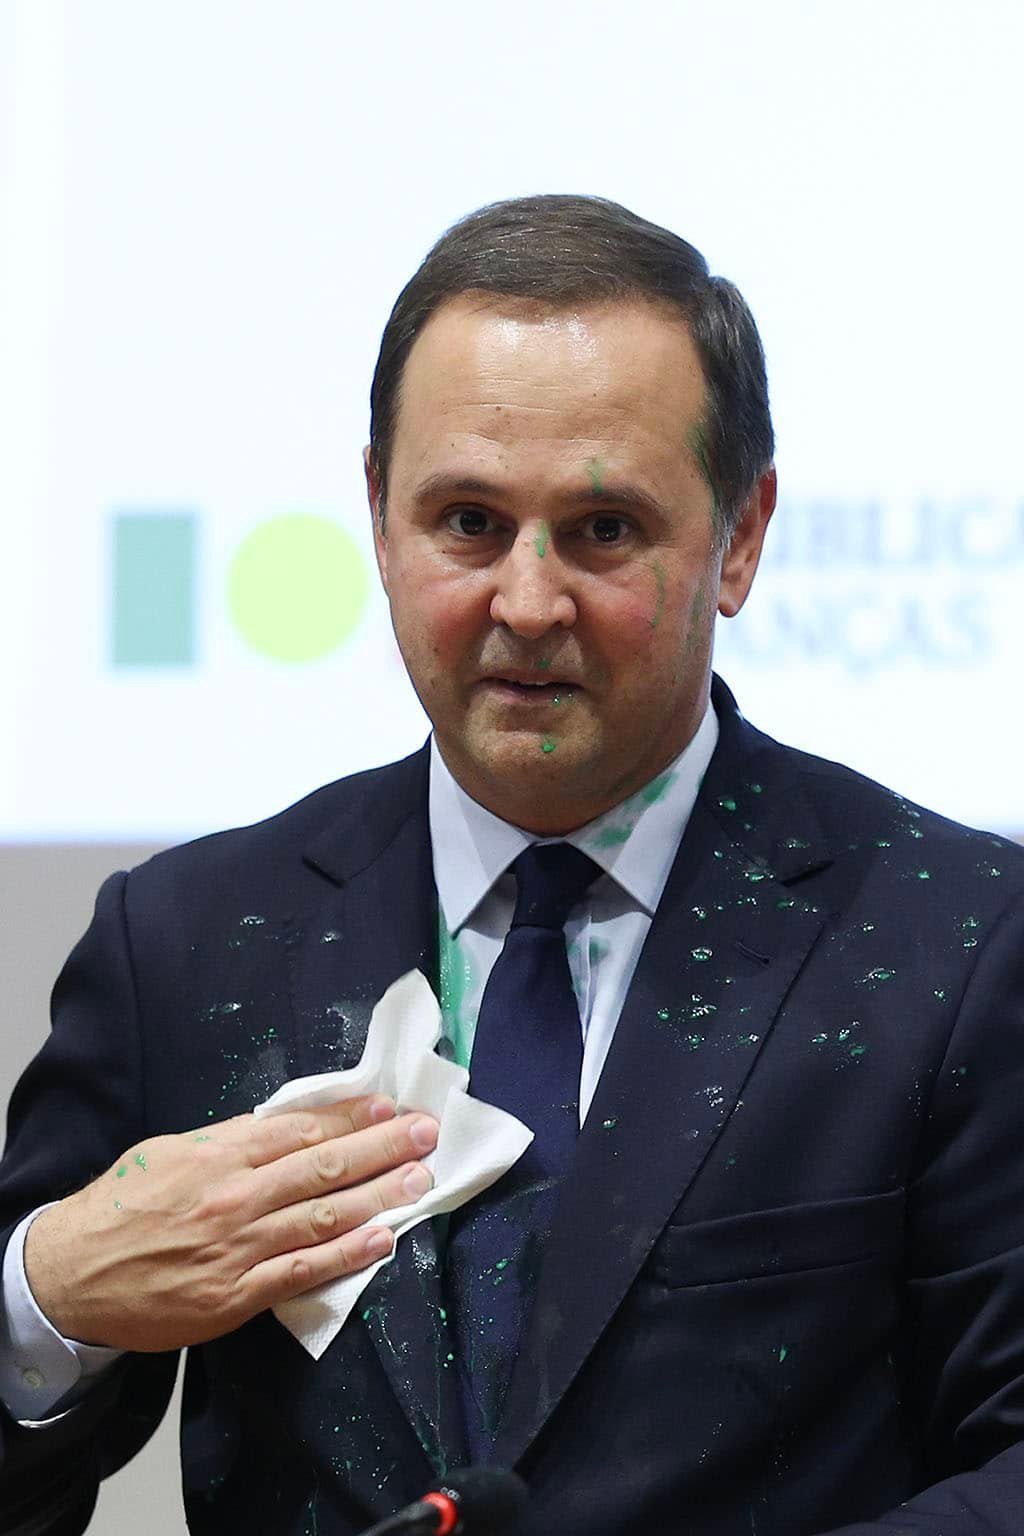 Vendredi dernier, le ministre des Finances Fernando Medina a été aspergé de peinture verte par un activiste climatique mais il a vaillamment continué son discours à la Faculté de Droit de l'Université de Lisbonne.